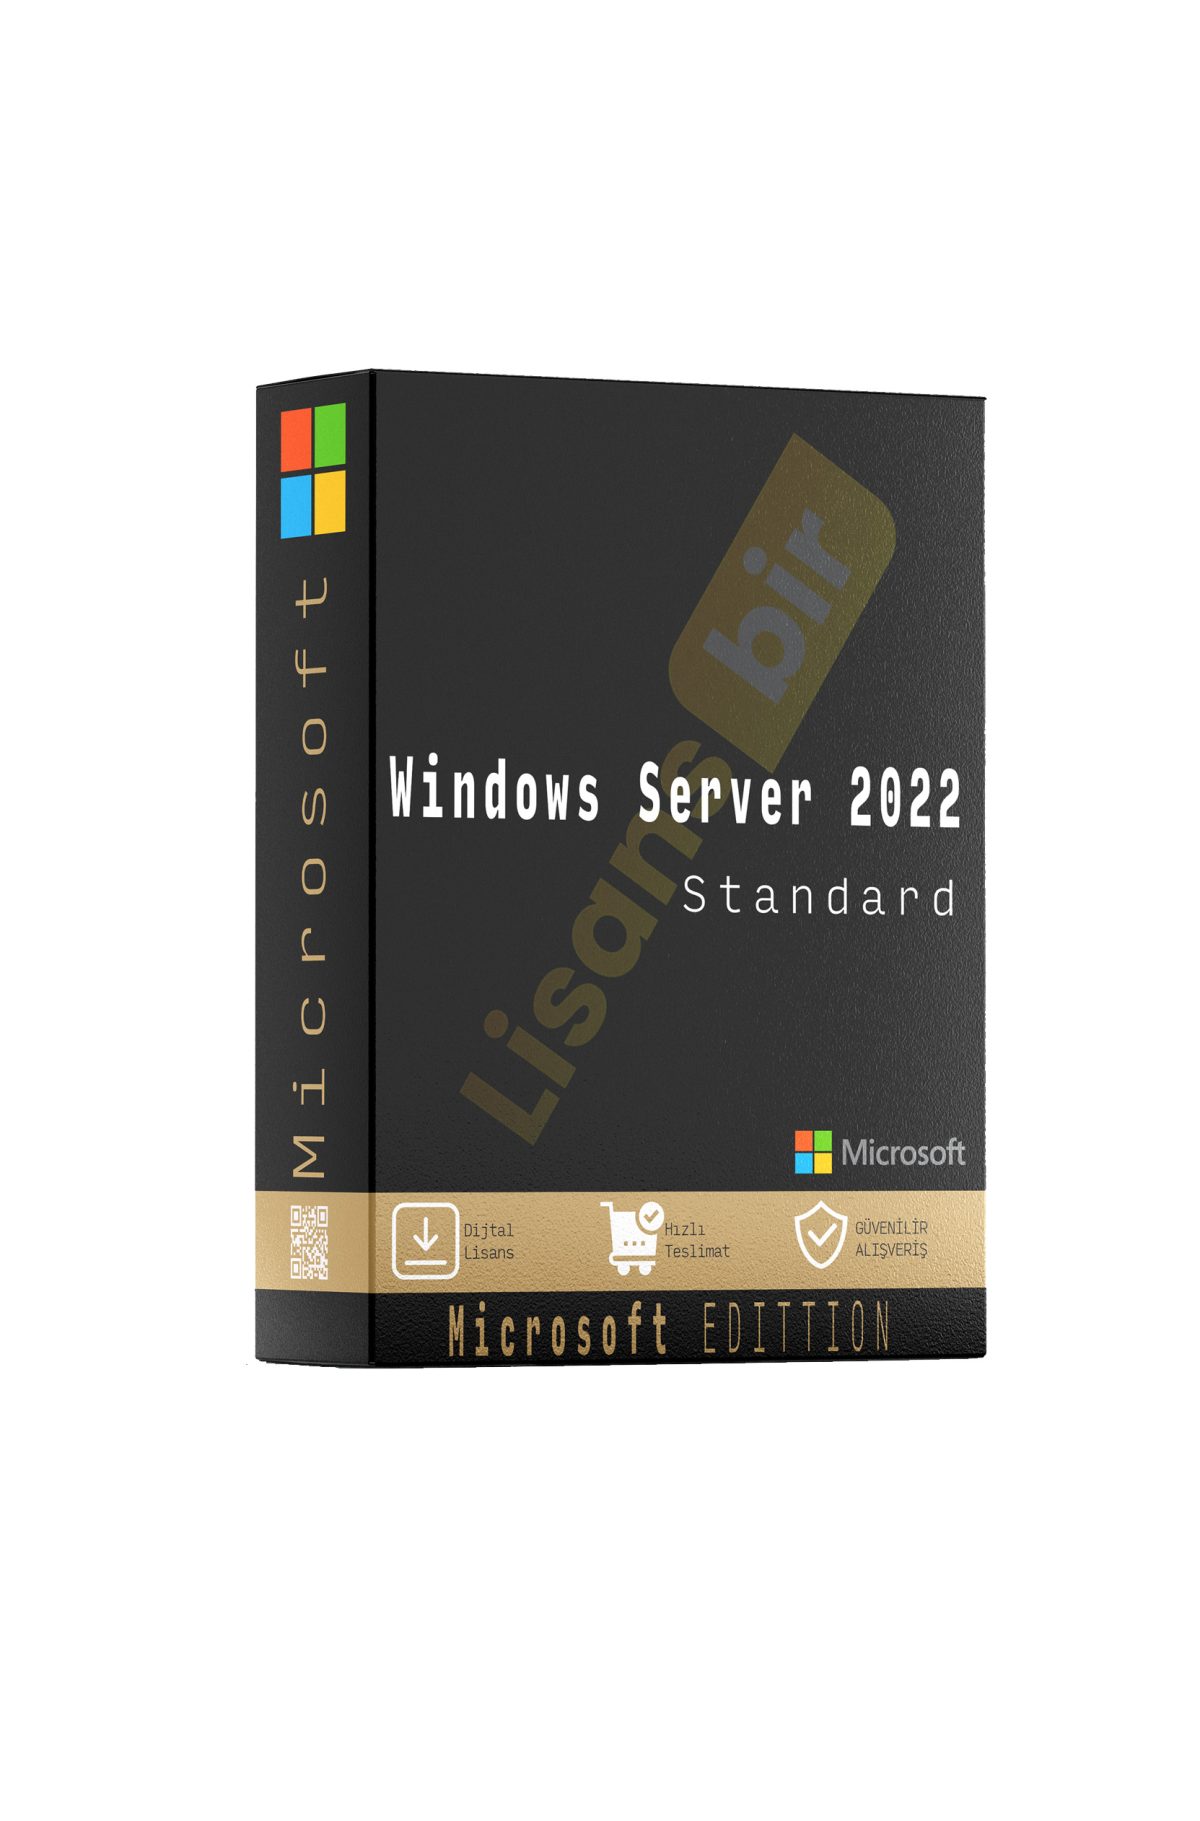 Windows Server 2022 Standard özellikleri ve çekici yönleri hakkında daha fazla bilgi için Lisansbir ürün sayfasını ziyaret edebilirsiniz.